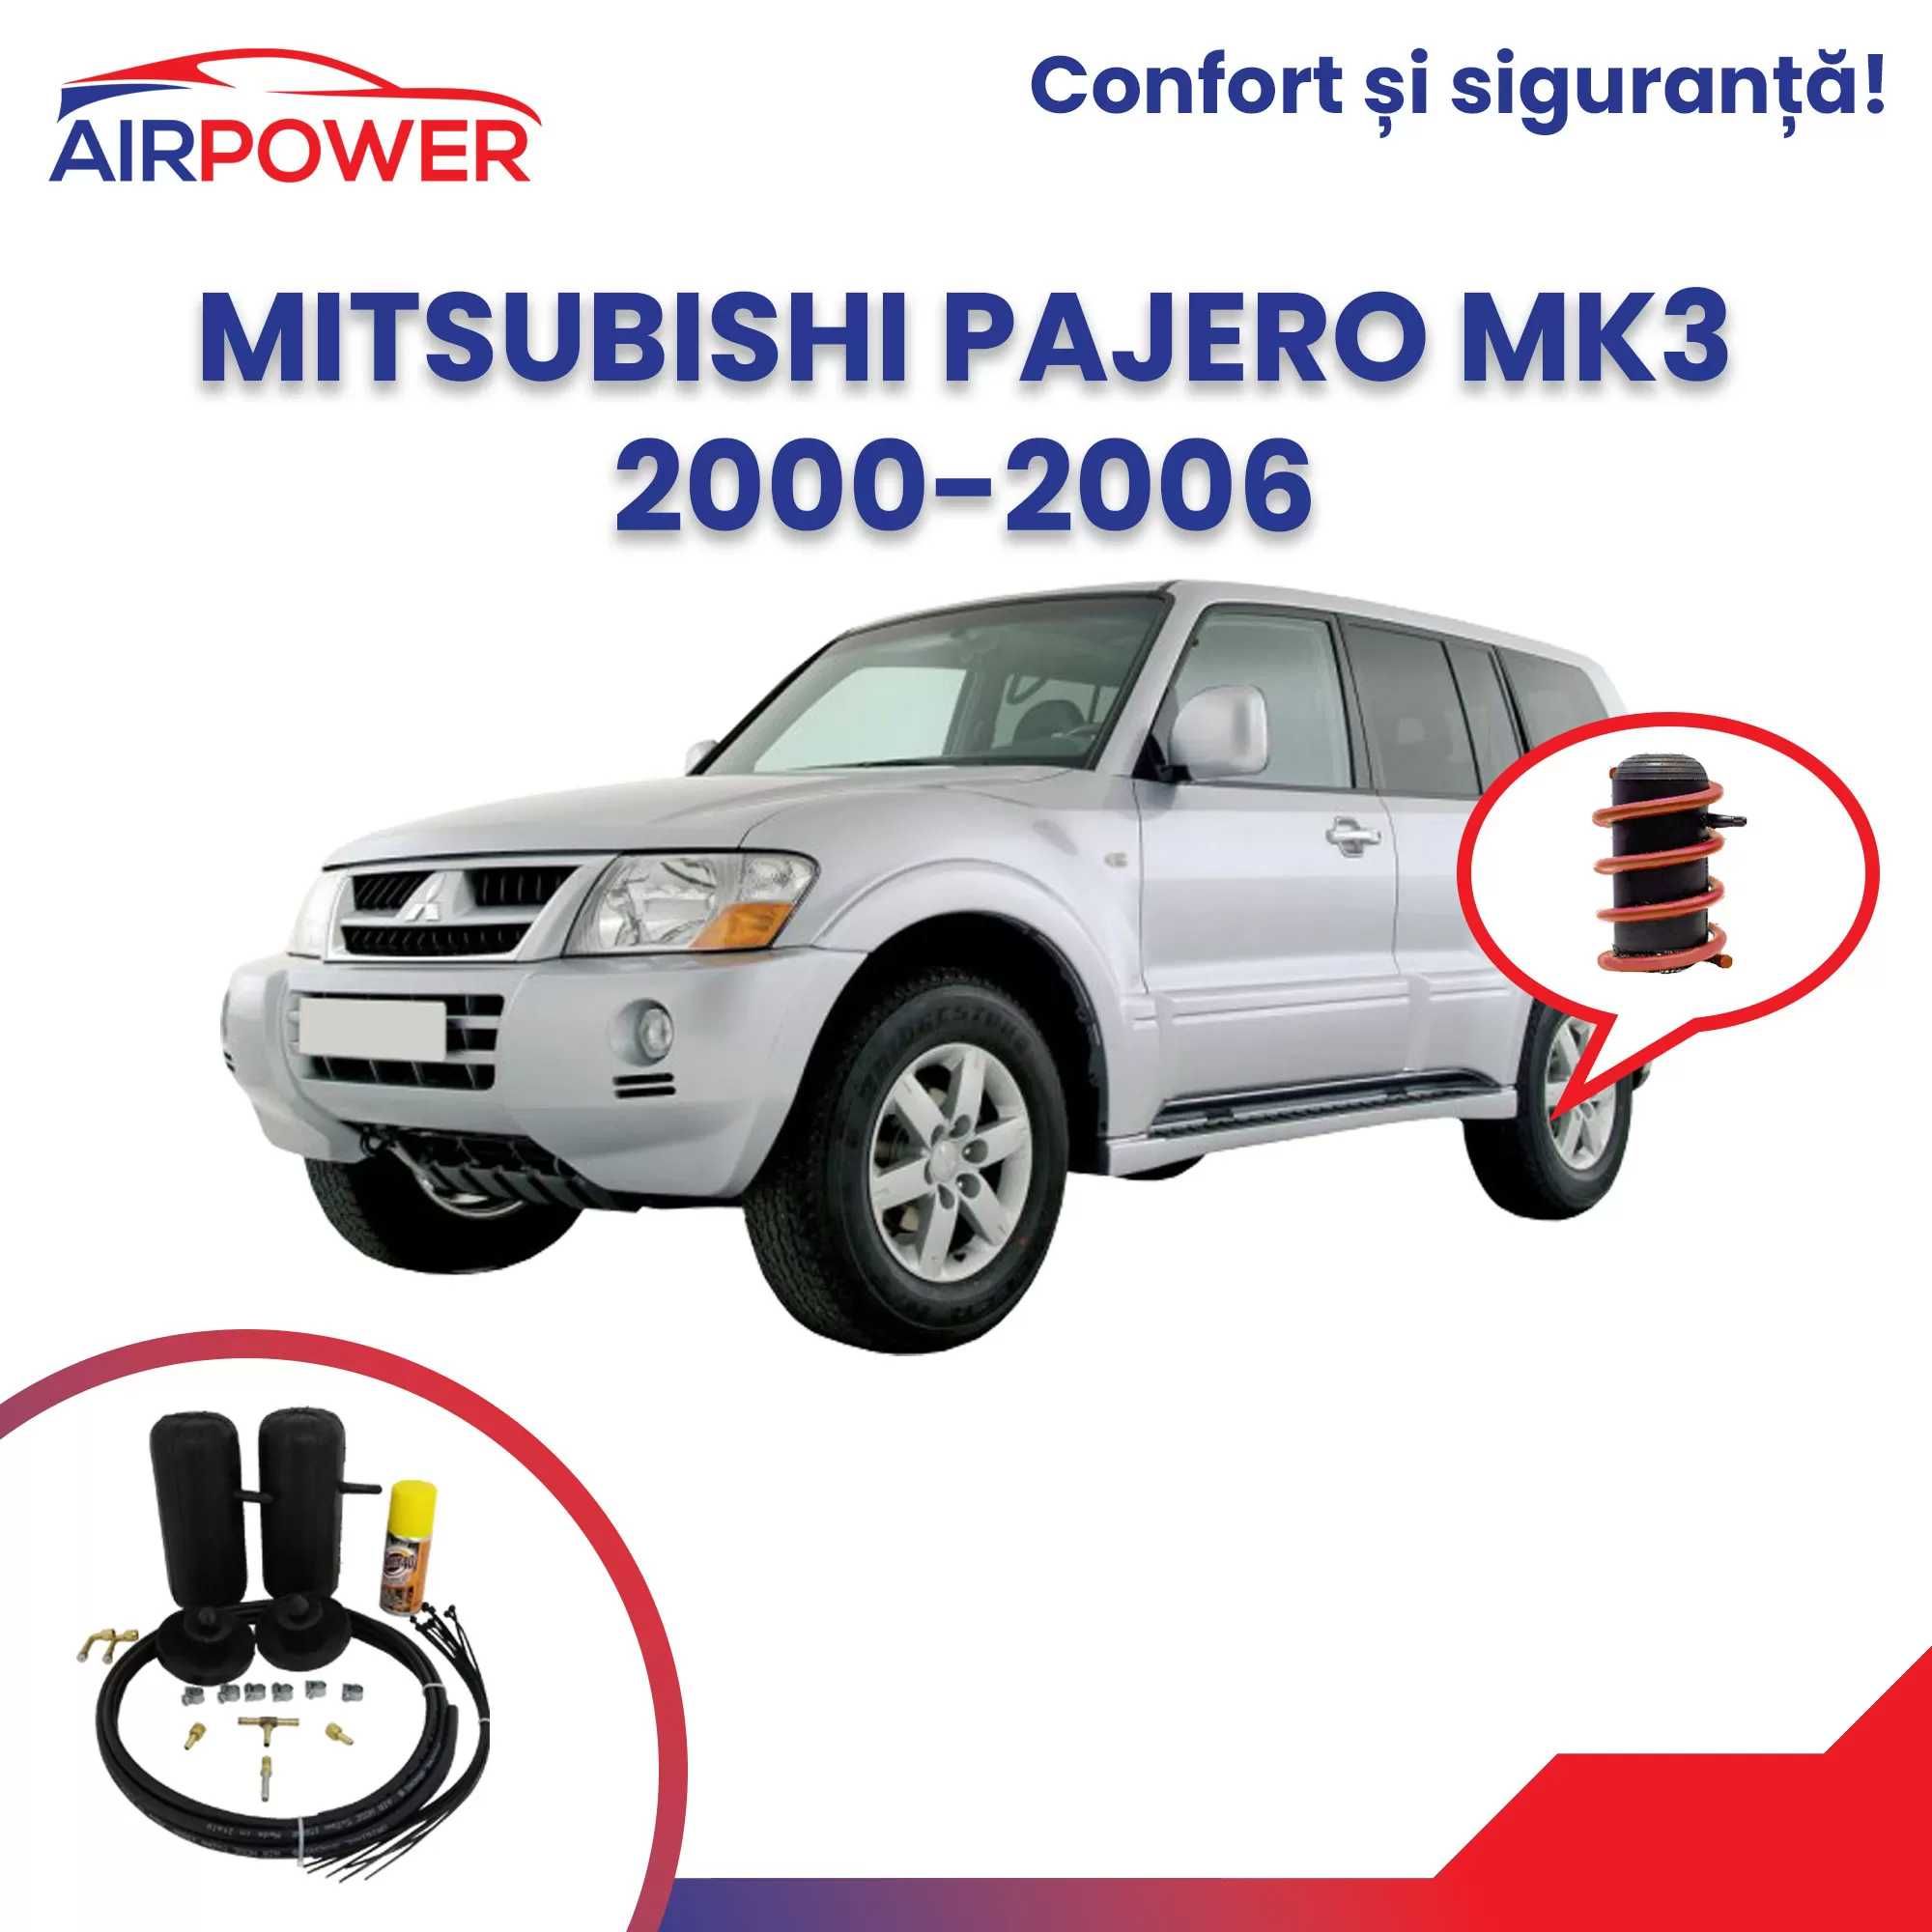 Perne auxiliare, perne auto pneumatice, Mitsubishi Pajero.